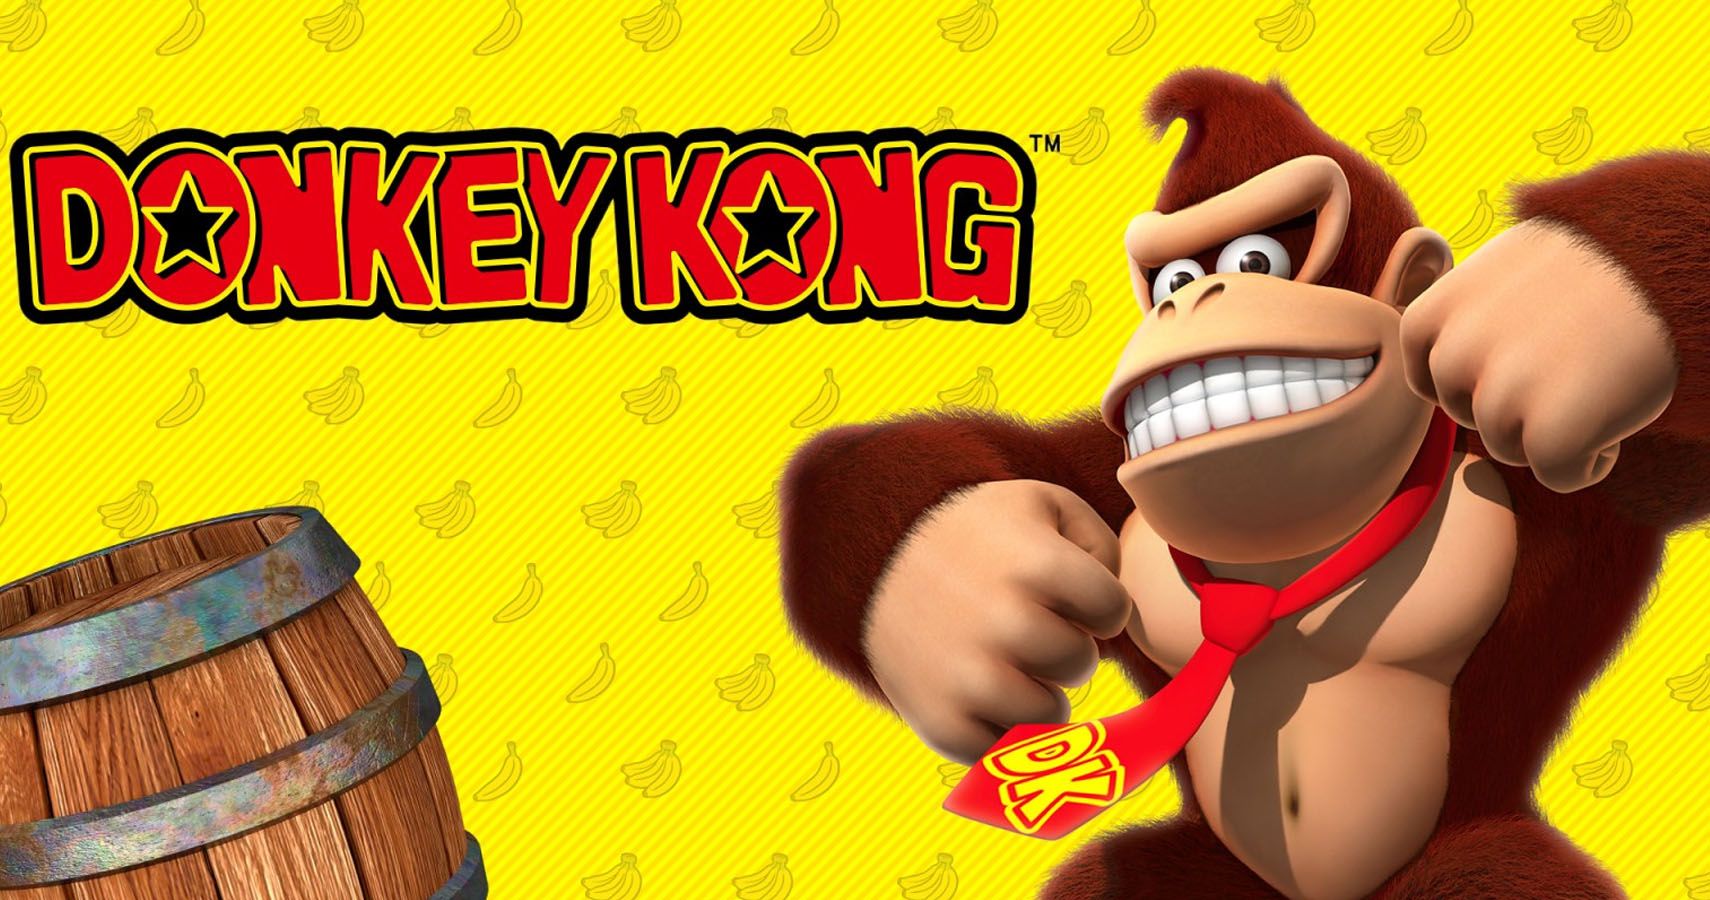 King Kong - Metacritic